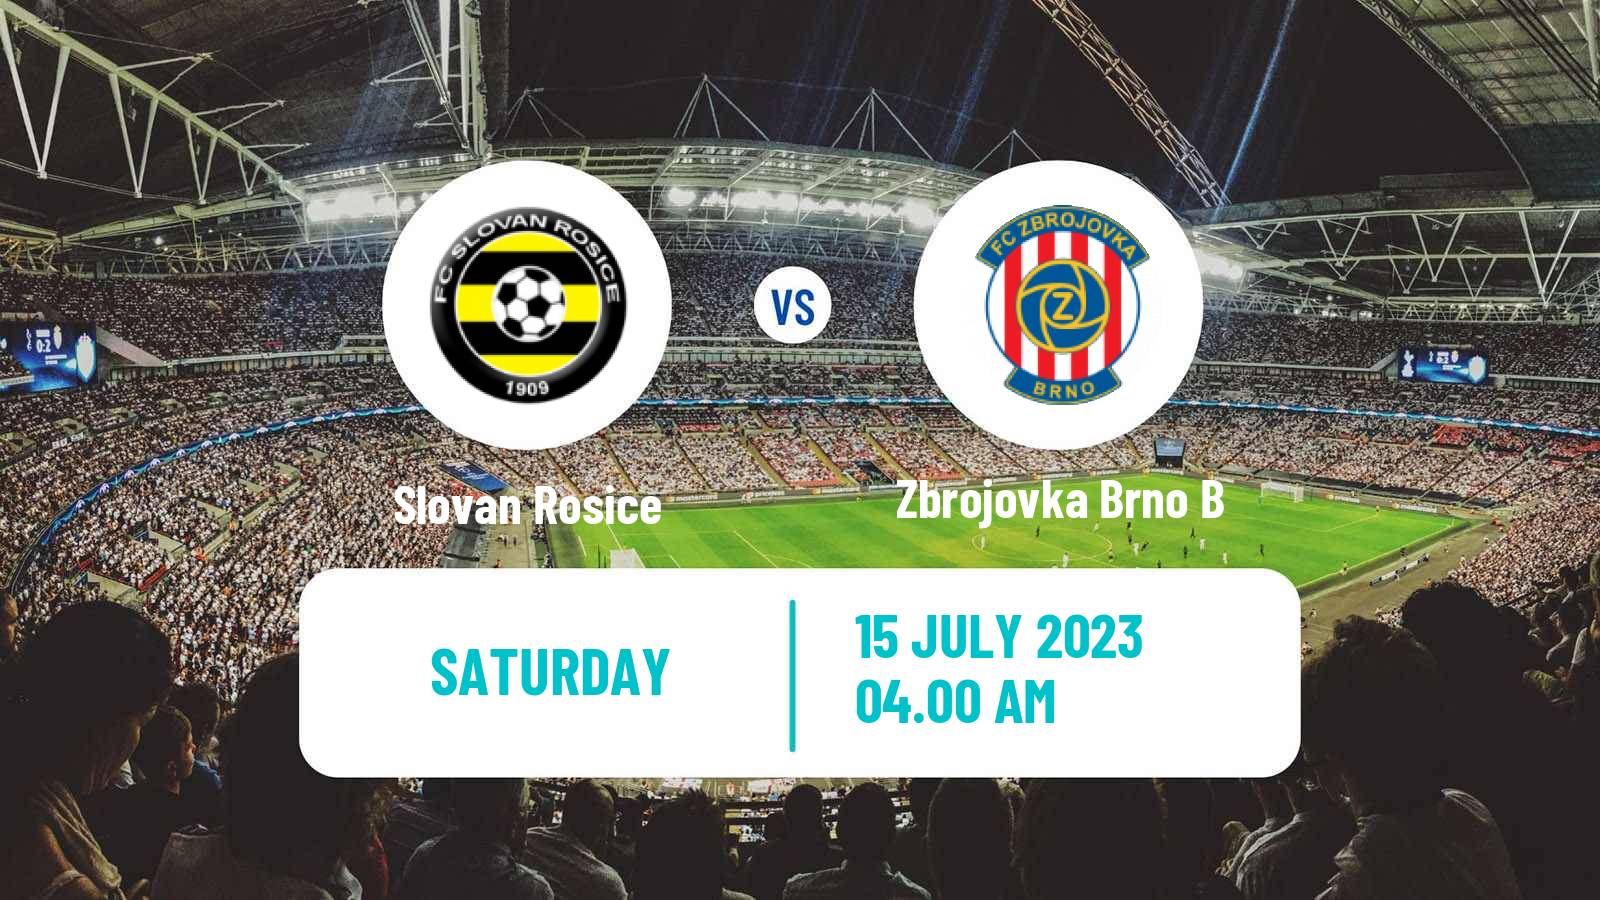 Soccer Club Friendly Slovan Rosice - Zbrojovka Brno B